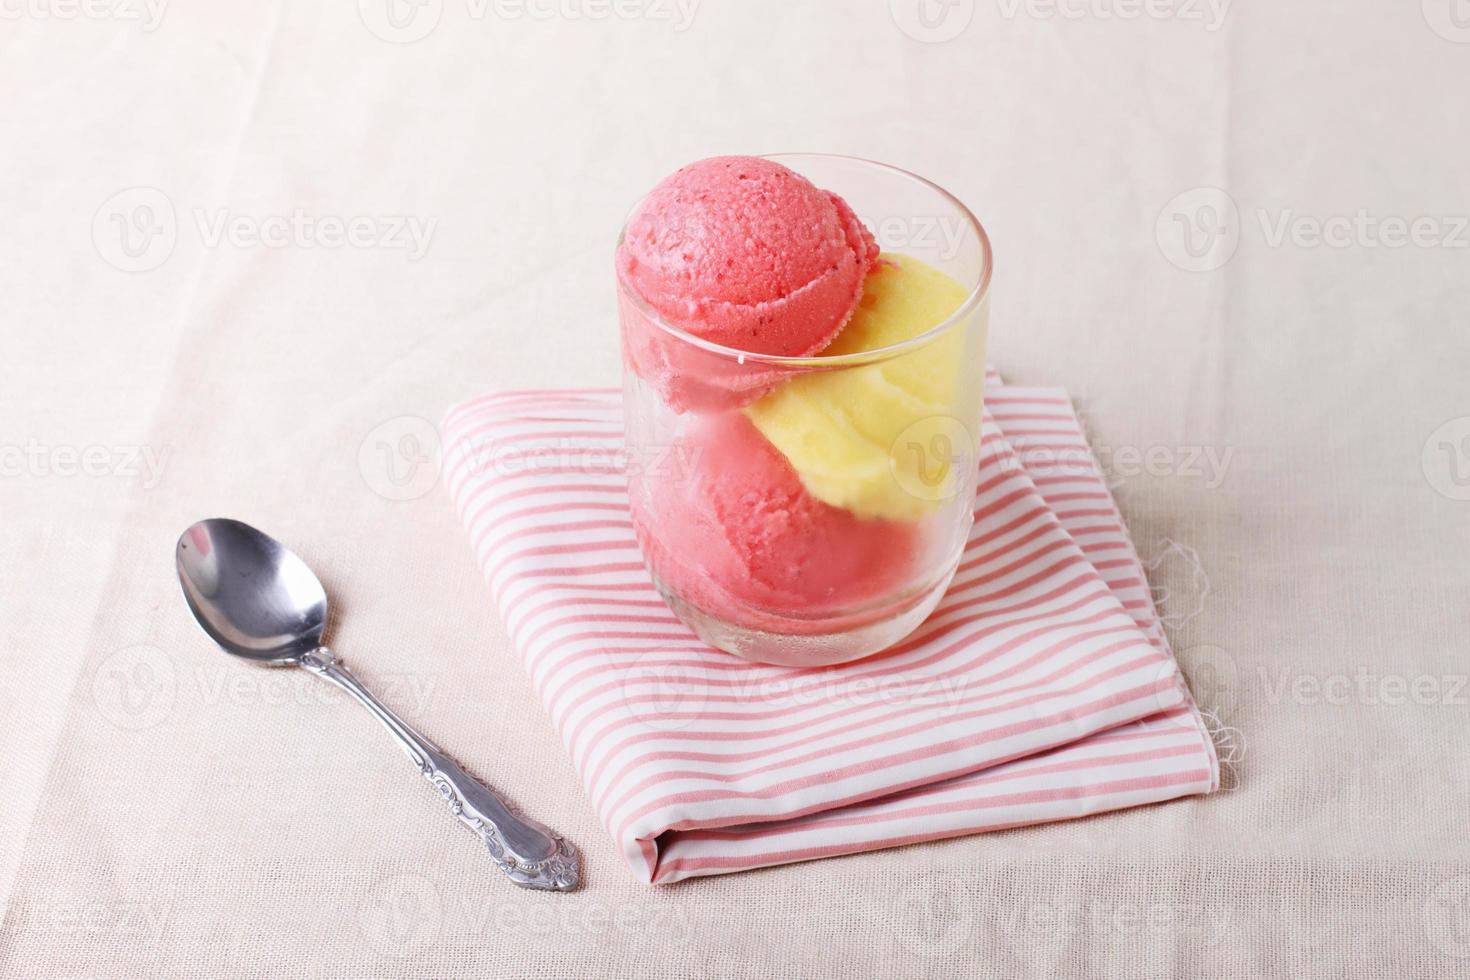 sorvete de morango e maracujá foto